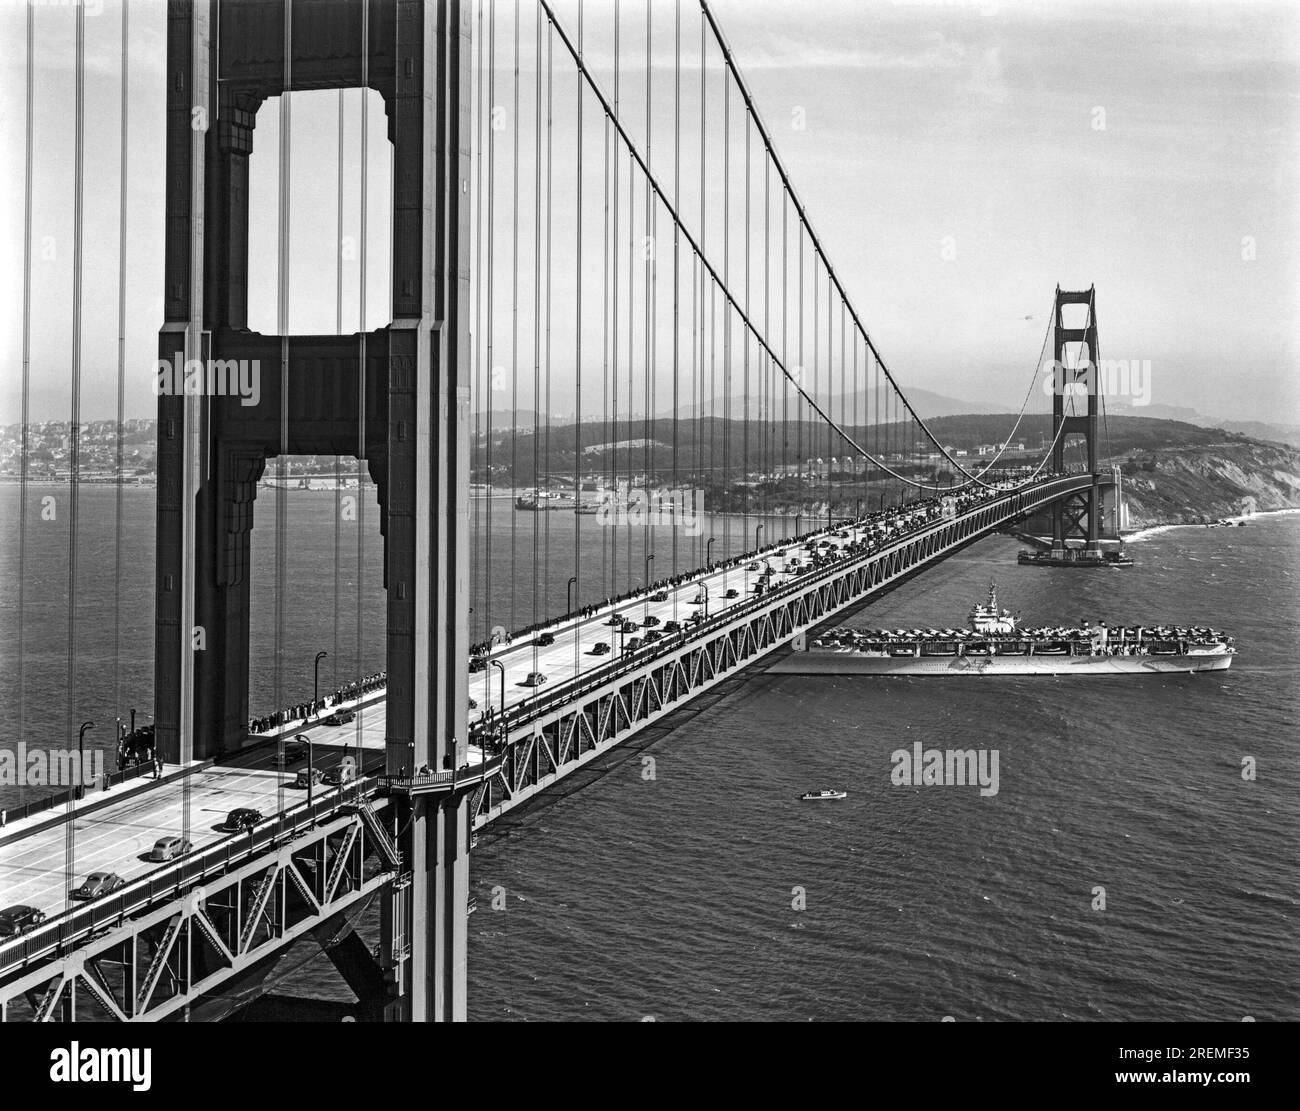 San Francisco, Californie : 28 mai 1937 Un porte-avions de l'US Navy passant sous le Golden Gate Bridge lors des cérémonies d'ouverture du pont. Banque D'Images